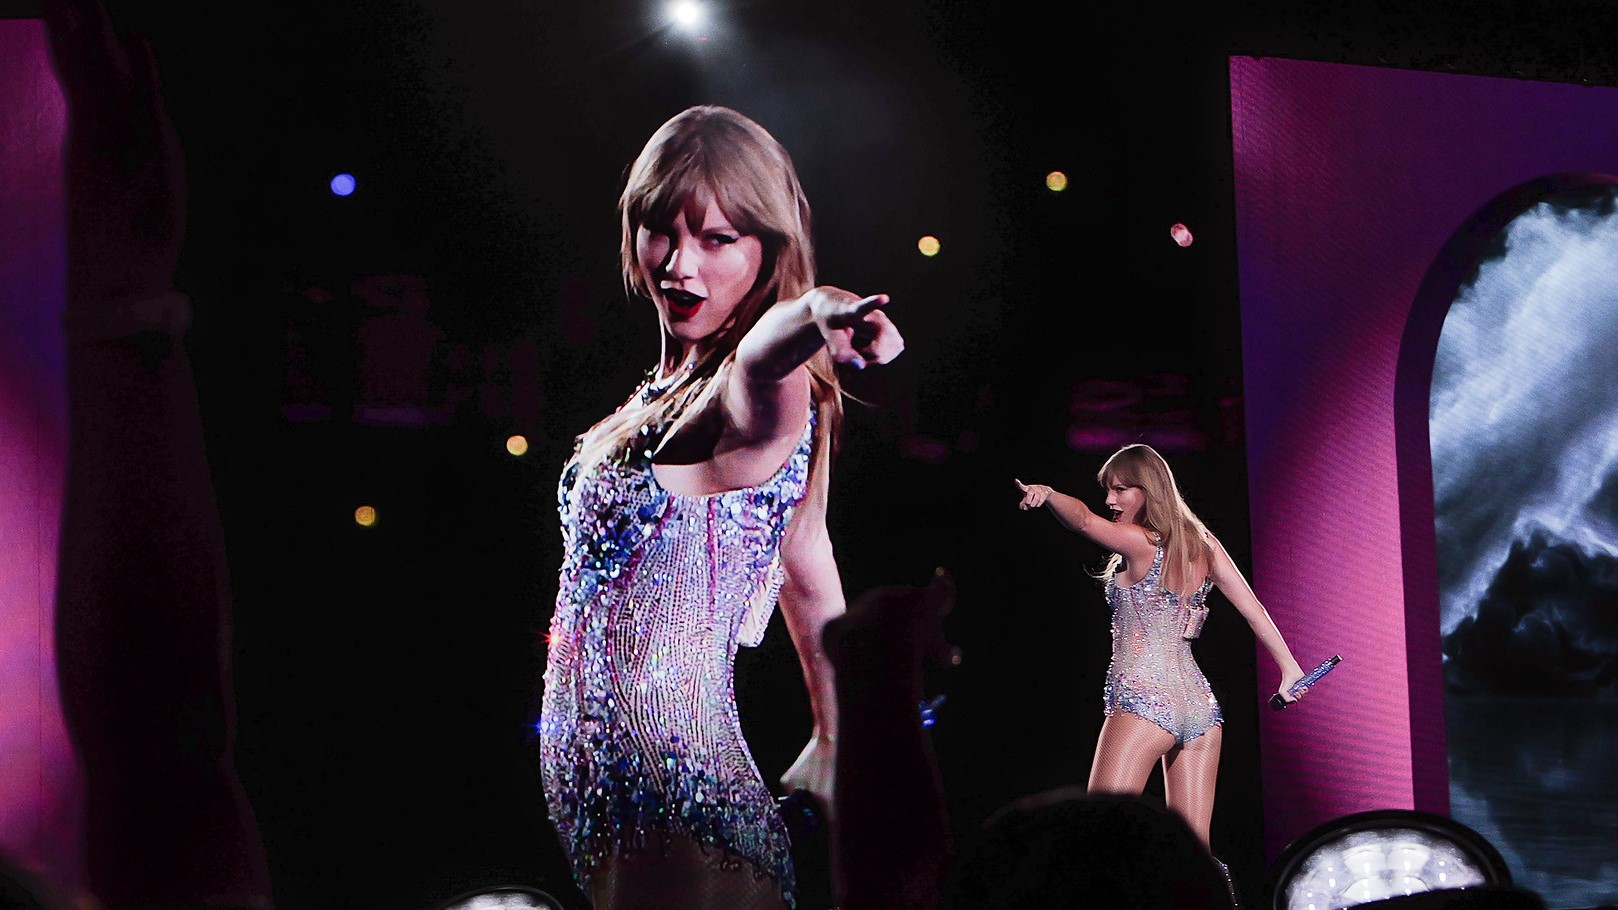 Taylor Swifts nackte Deepfakes erschienen auf X, was die Fans der Sängerin verärgert hat